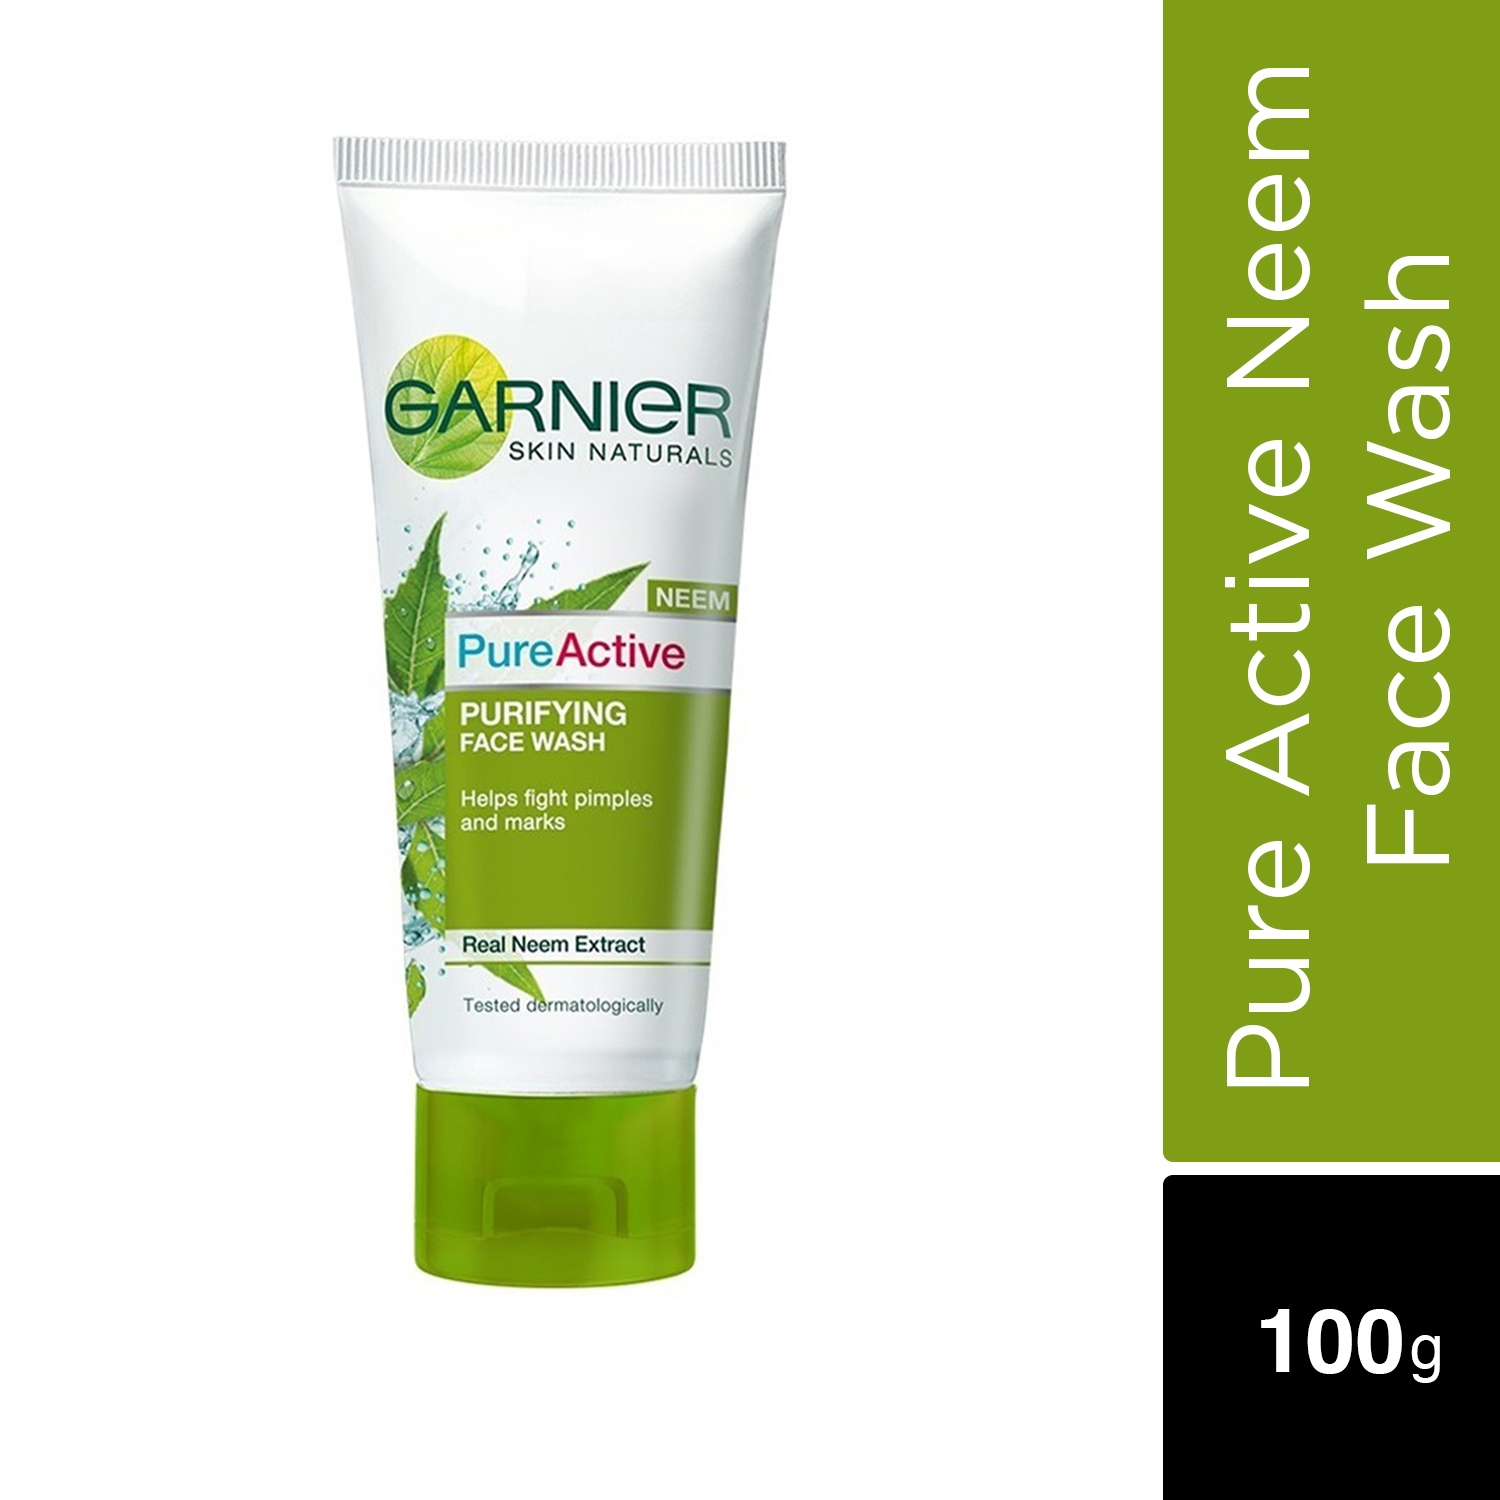 Garnier | Garnier Skin Naturals Pure Active Neem Face Wash (100g)